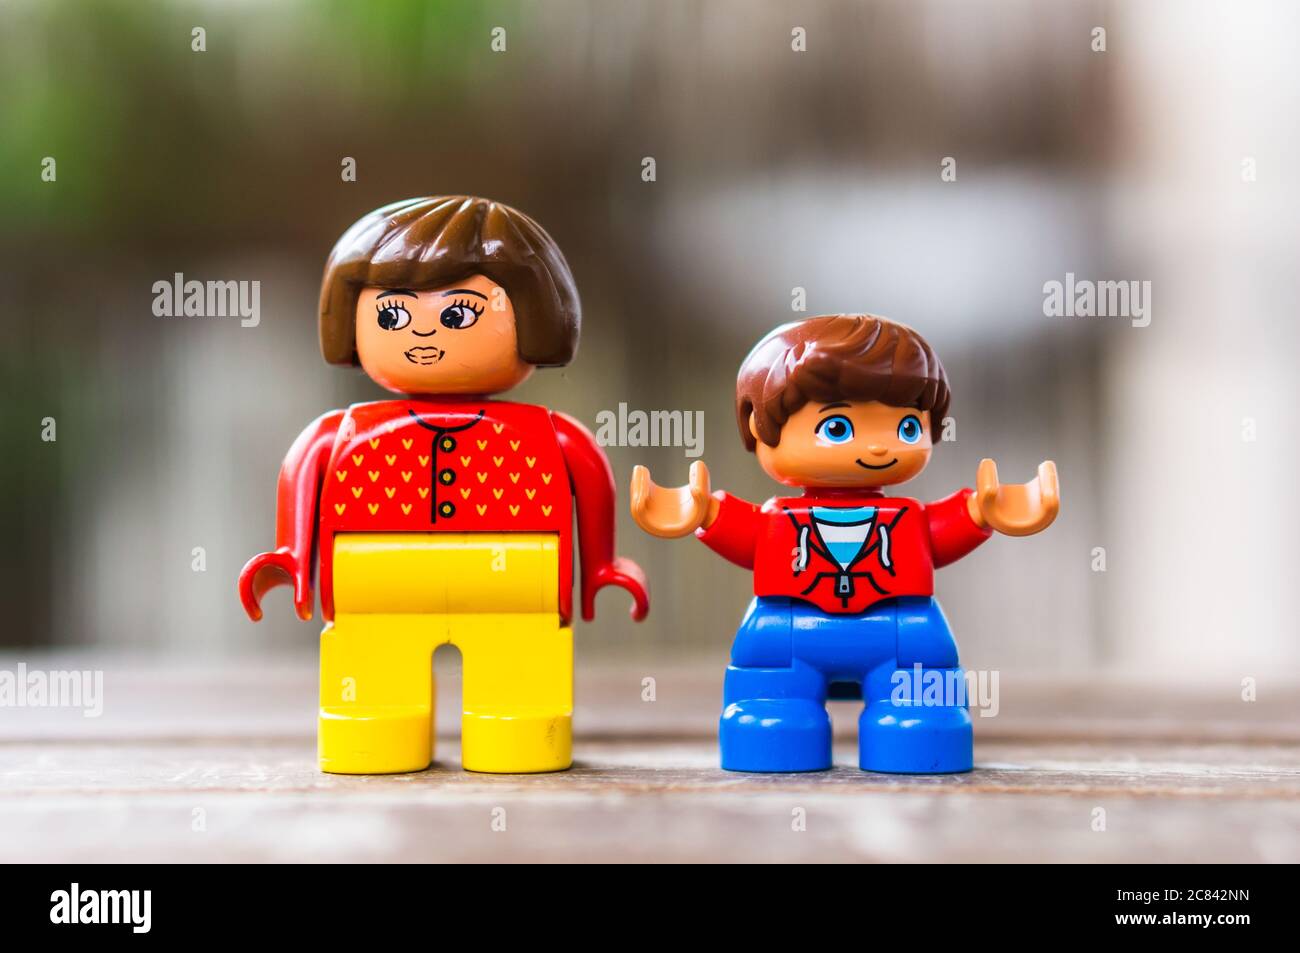 POZNAN, POLEN - 13. Jul 2020: LEGO Duplo Frauen- und Kinderfiguren stehen  auf einer Holzfläche im Hintergrund mit weichem Fokus Stockfotografie -  Alamy